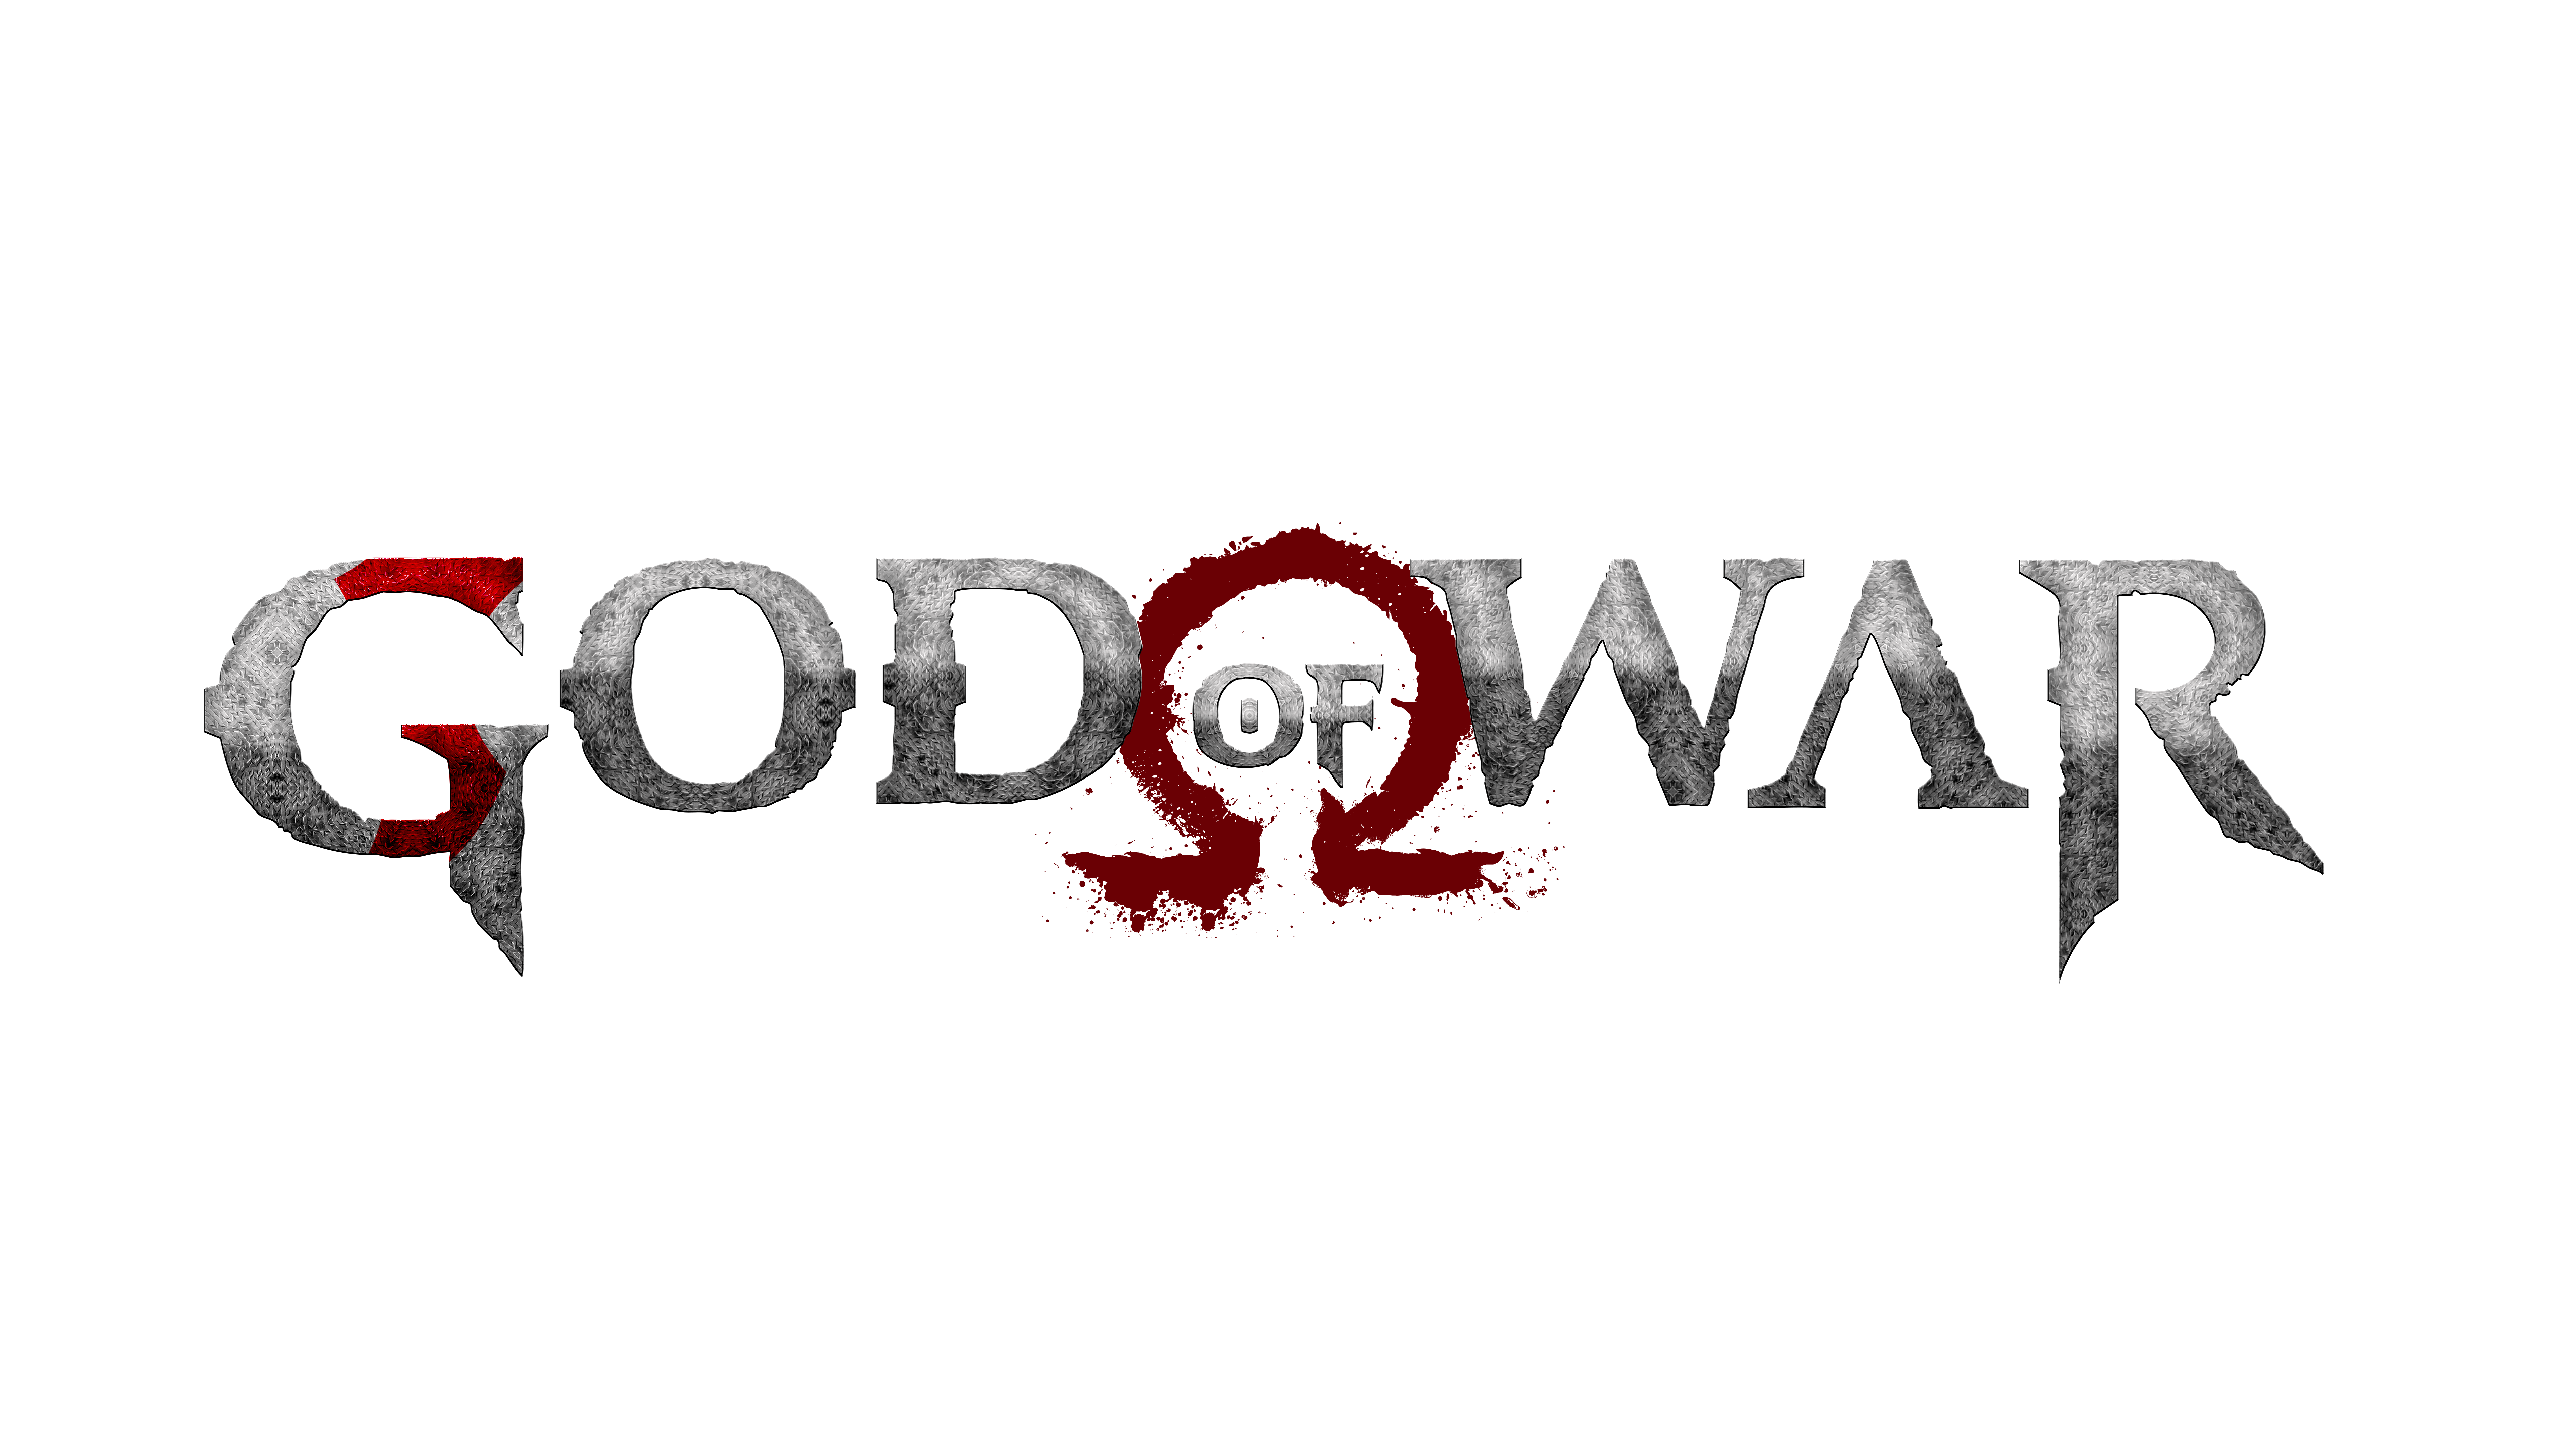 God Of War Logo PNG Pic